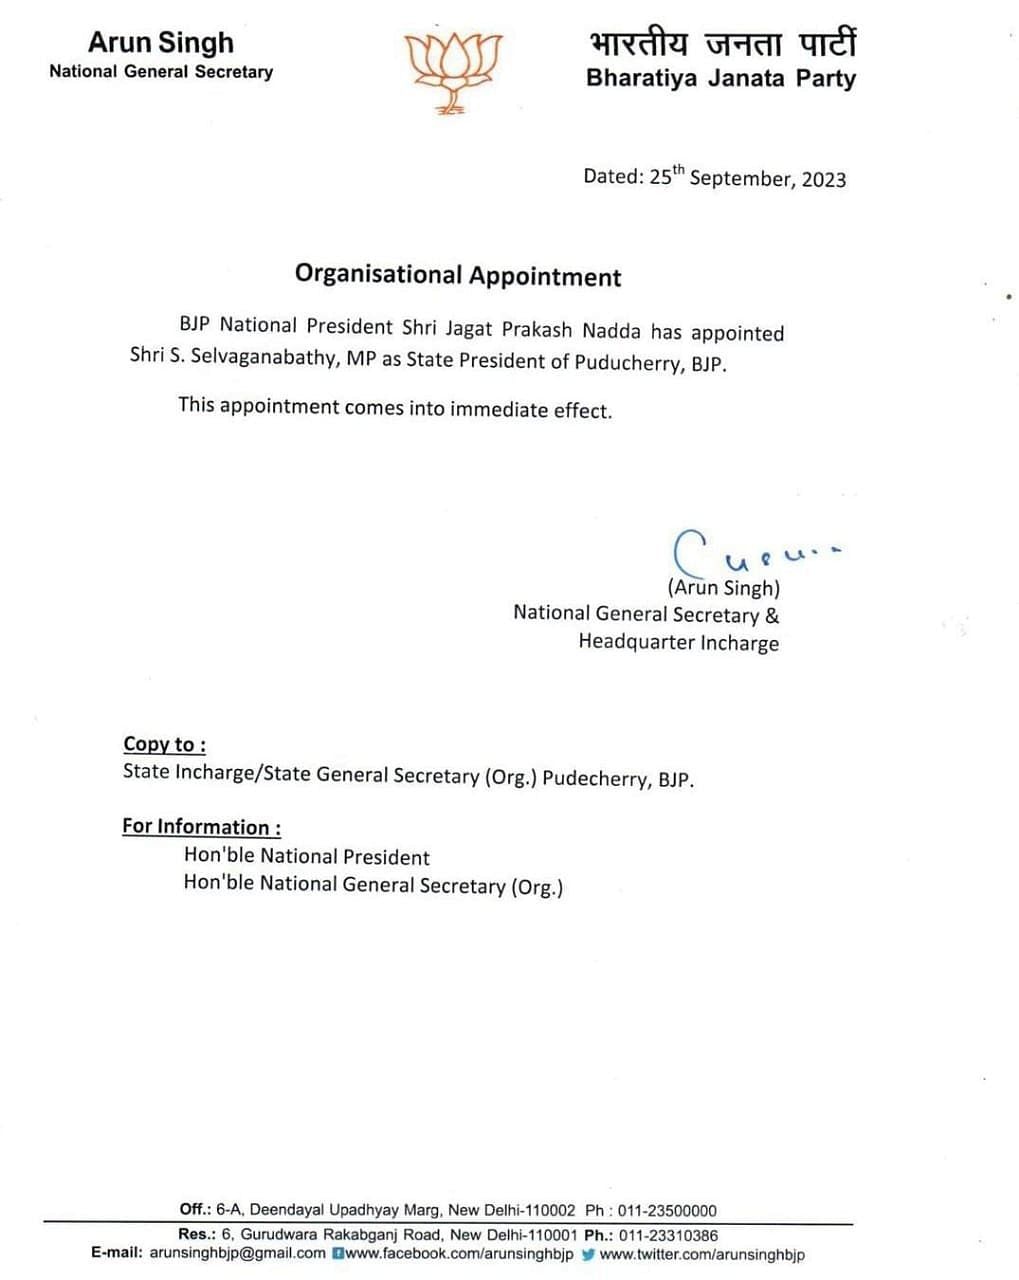 BJP ने बेंजामिन येपथोमी को नागालैंड, रिकमैन मोमिन को मेघालय और एस. सेल्वगनबथी को पुड्डुचेरी का नया प्रदेश अध्यक्ष नियुक्त किया है.